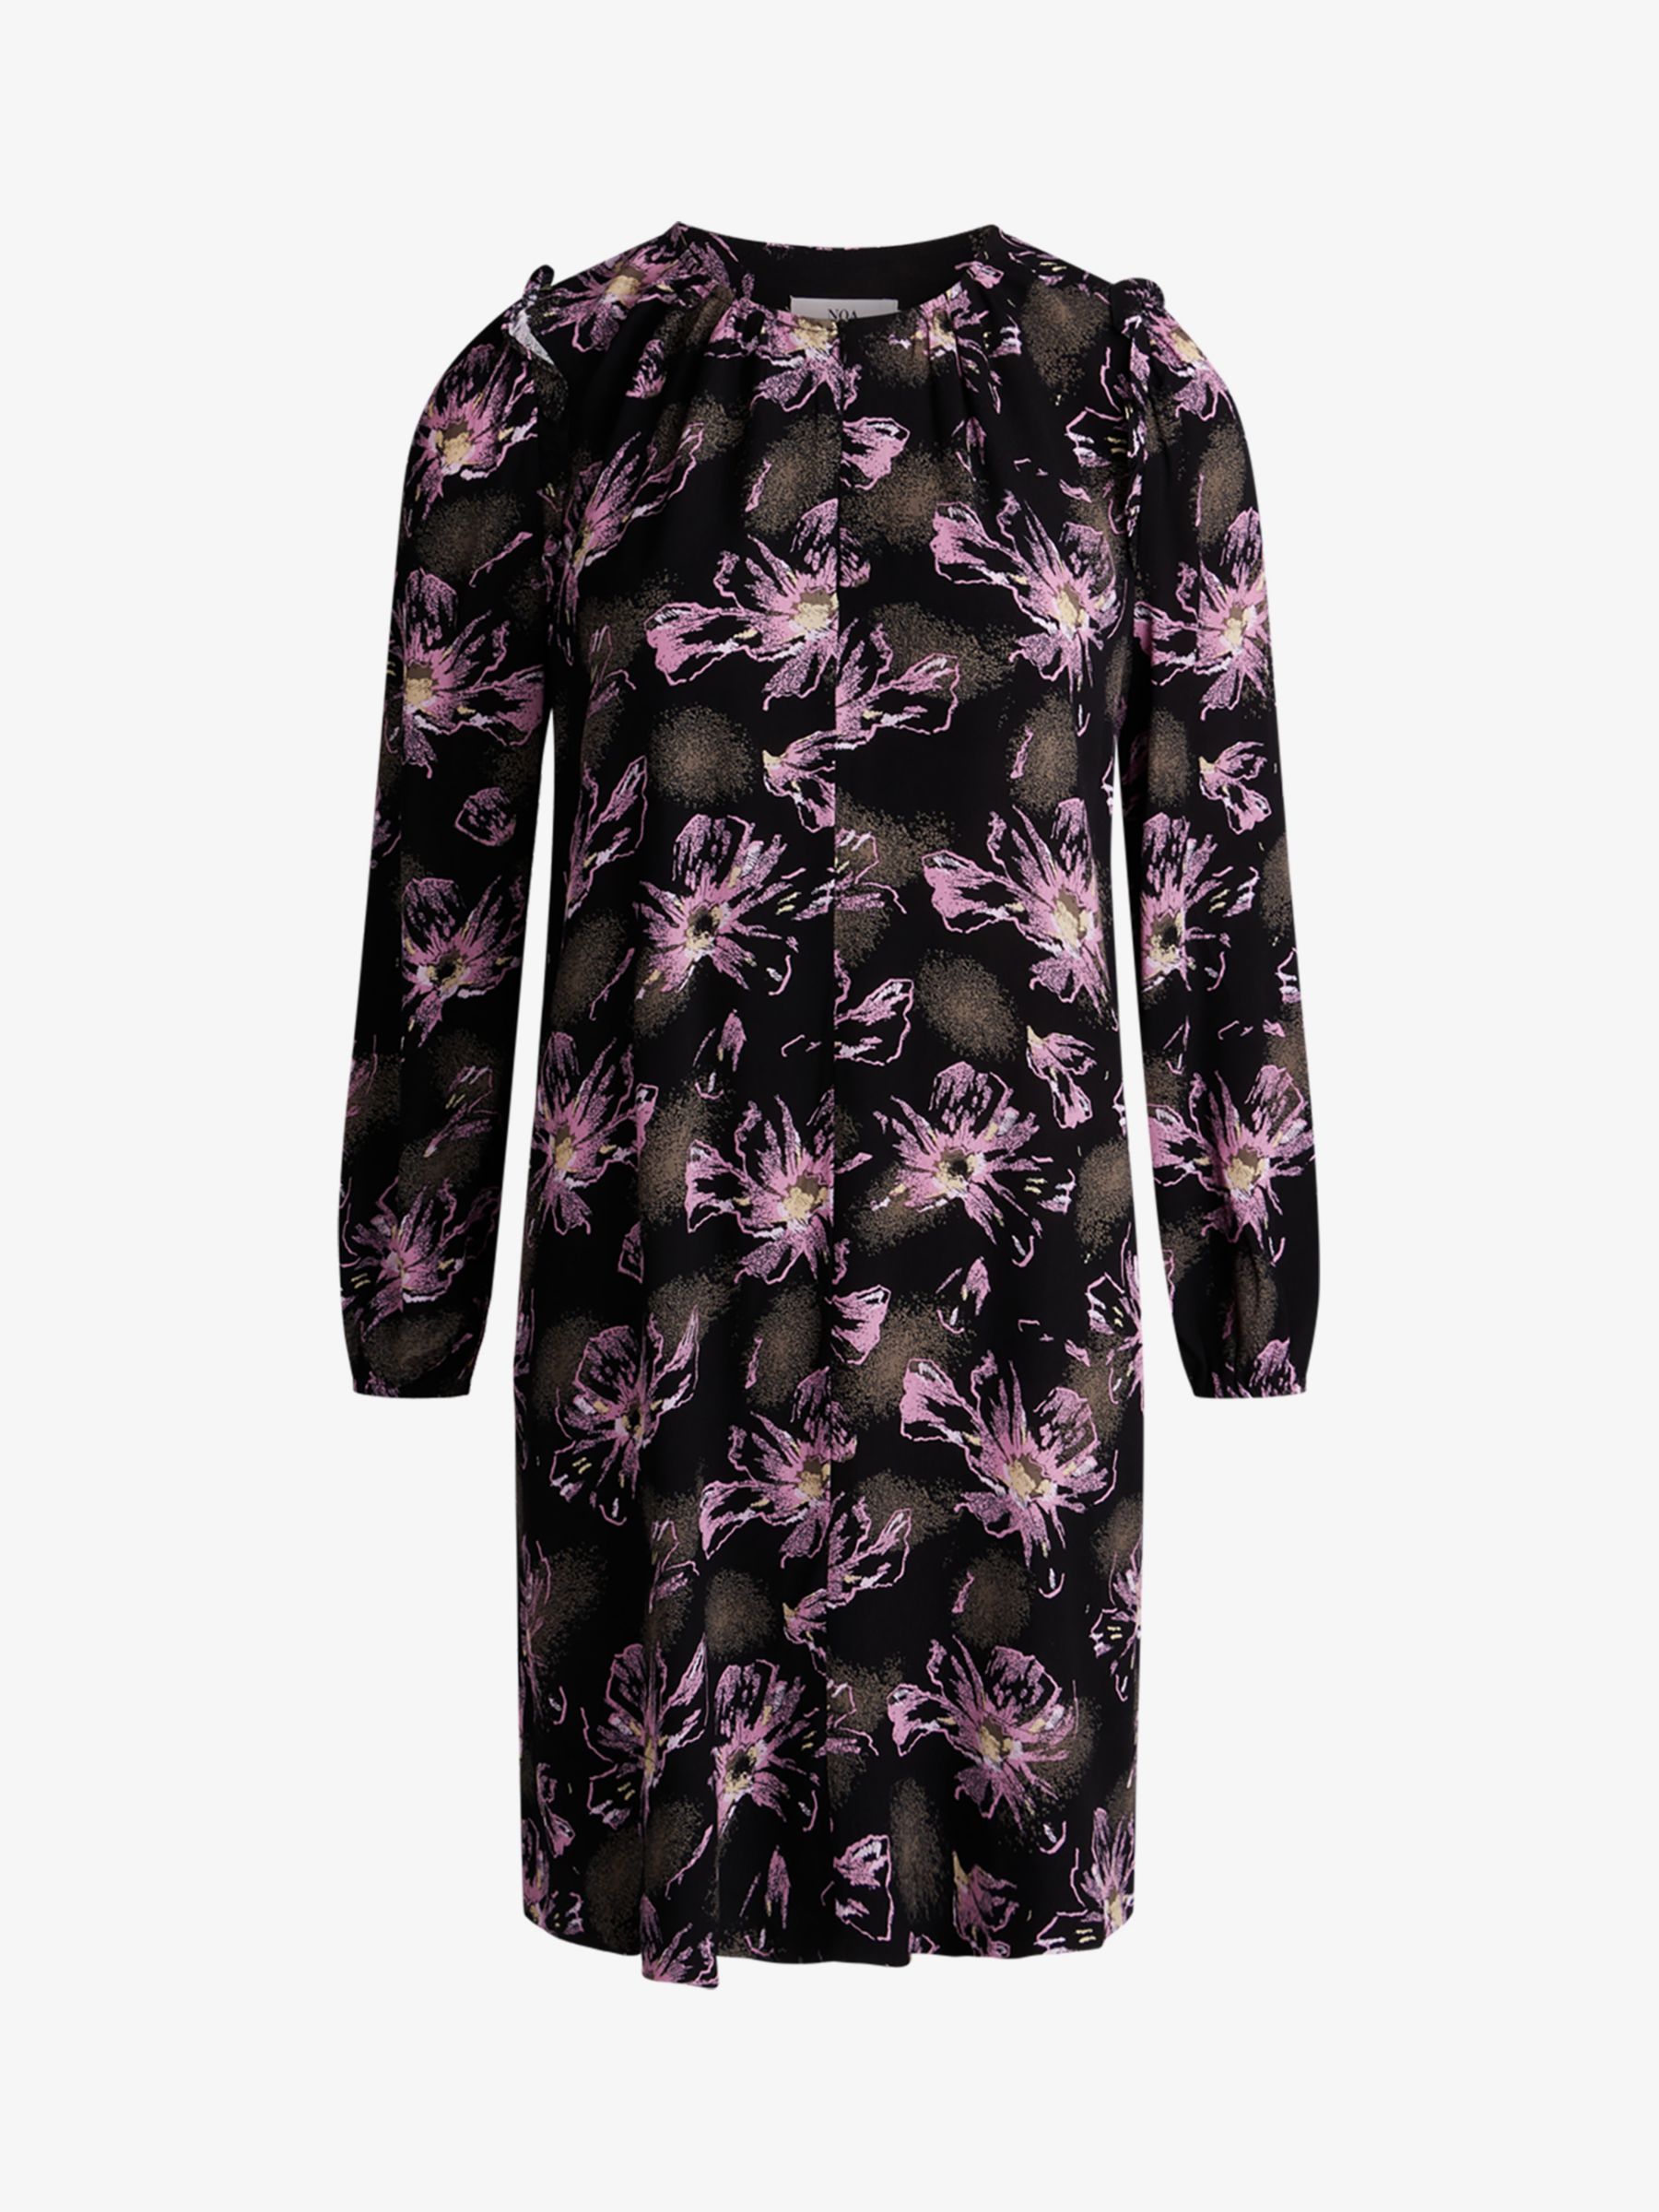 Noa Noa Liva Floral Print Mini Dress, Black/Purple, 6